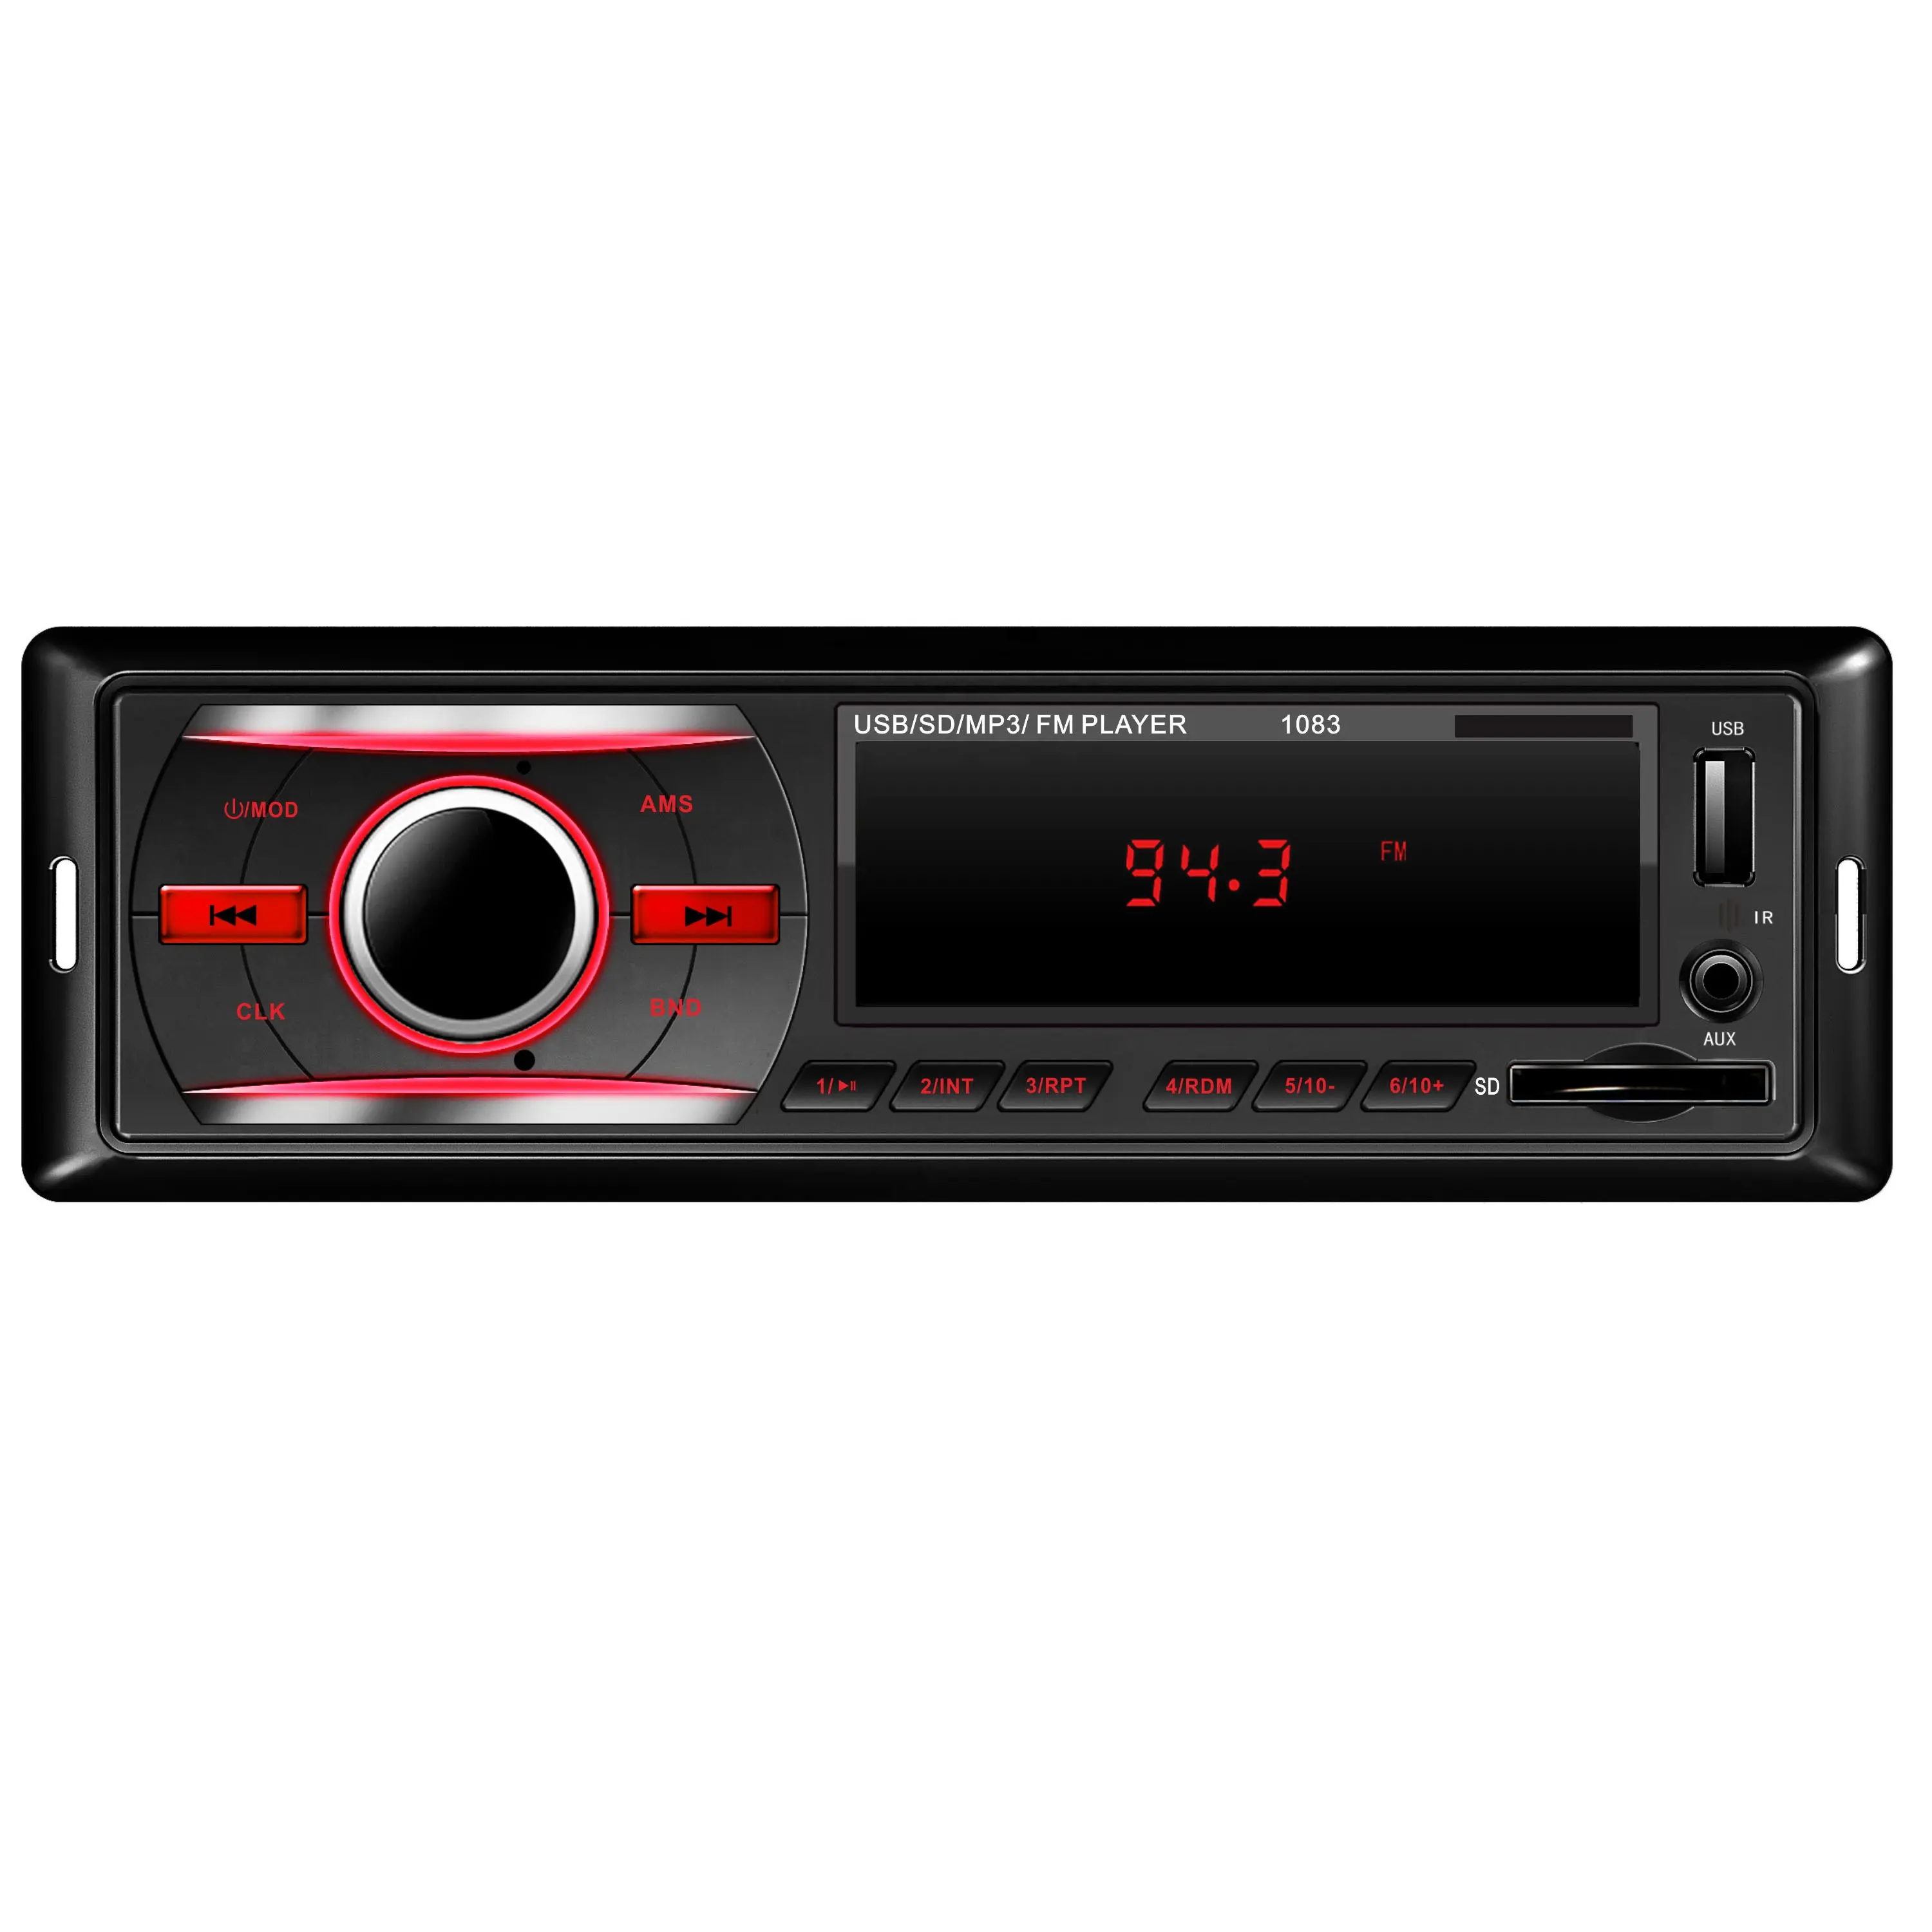 PIONEER-reproductor MP3 estéreo para coche, con BT, SD, USB, AUX, PANEL LCD, opciones de PANEL LED